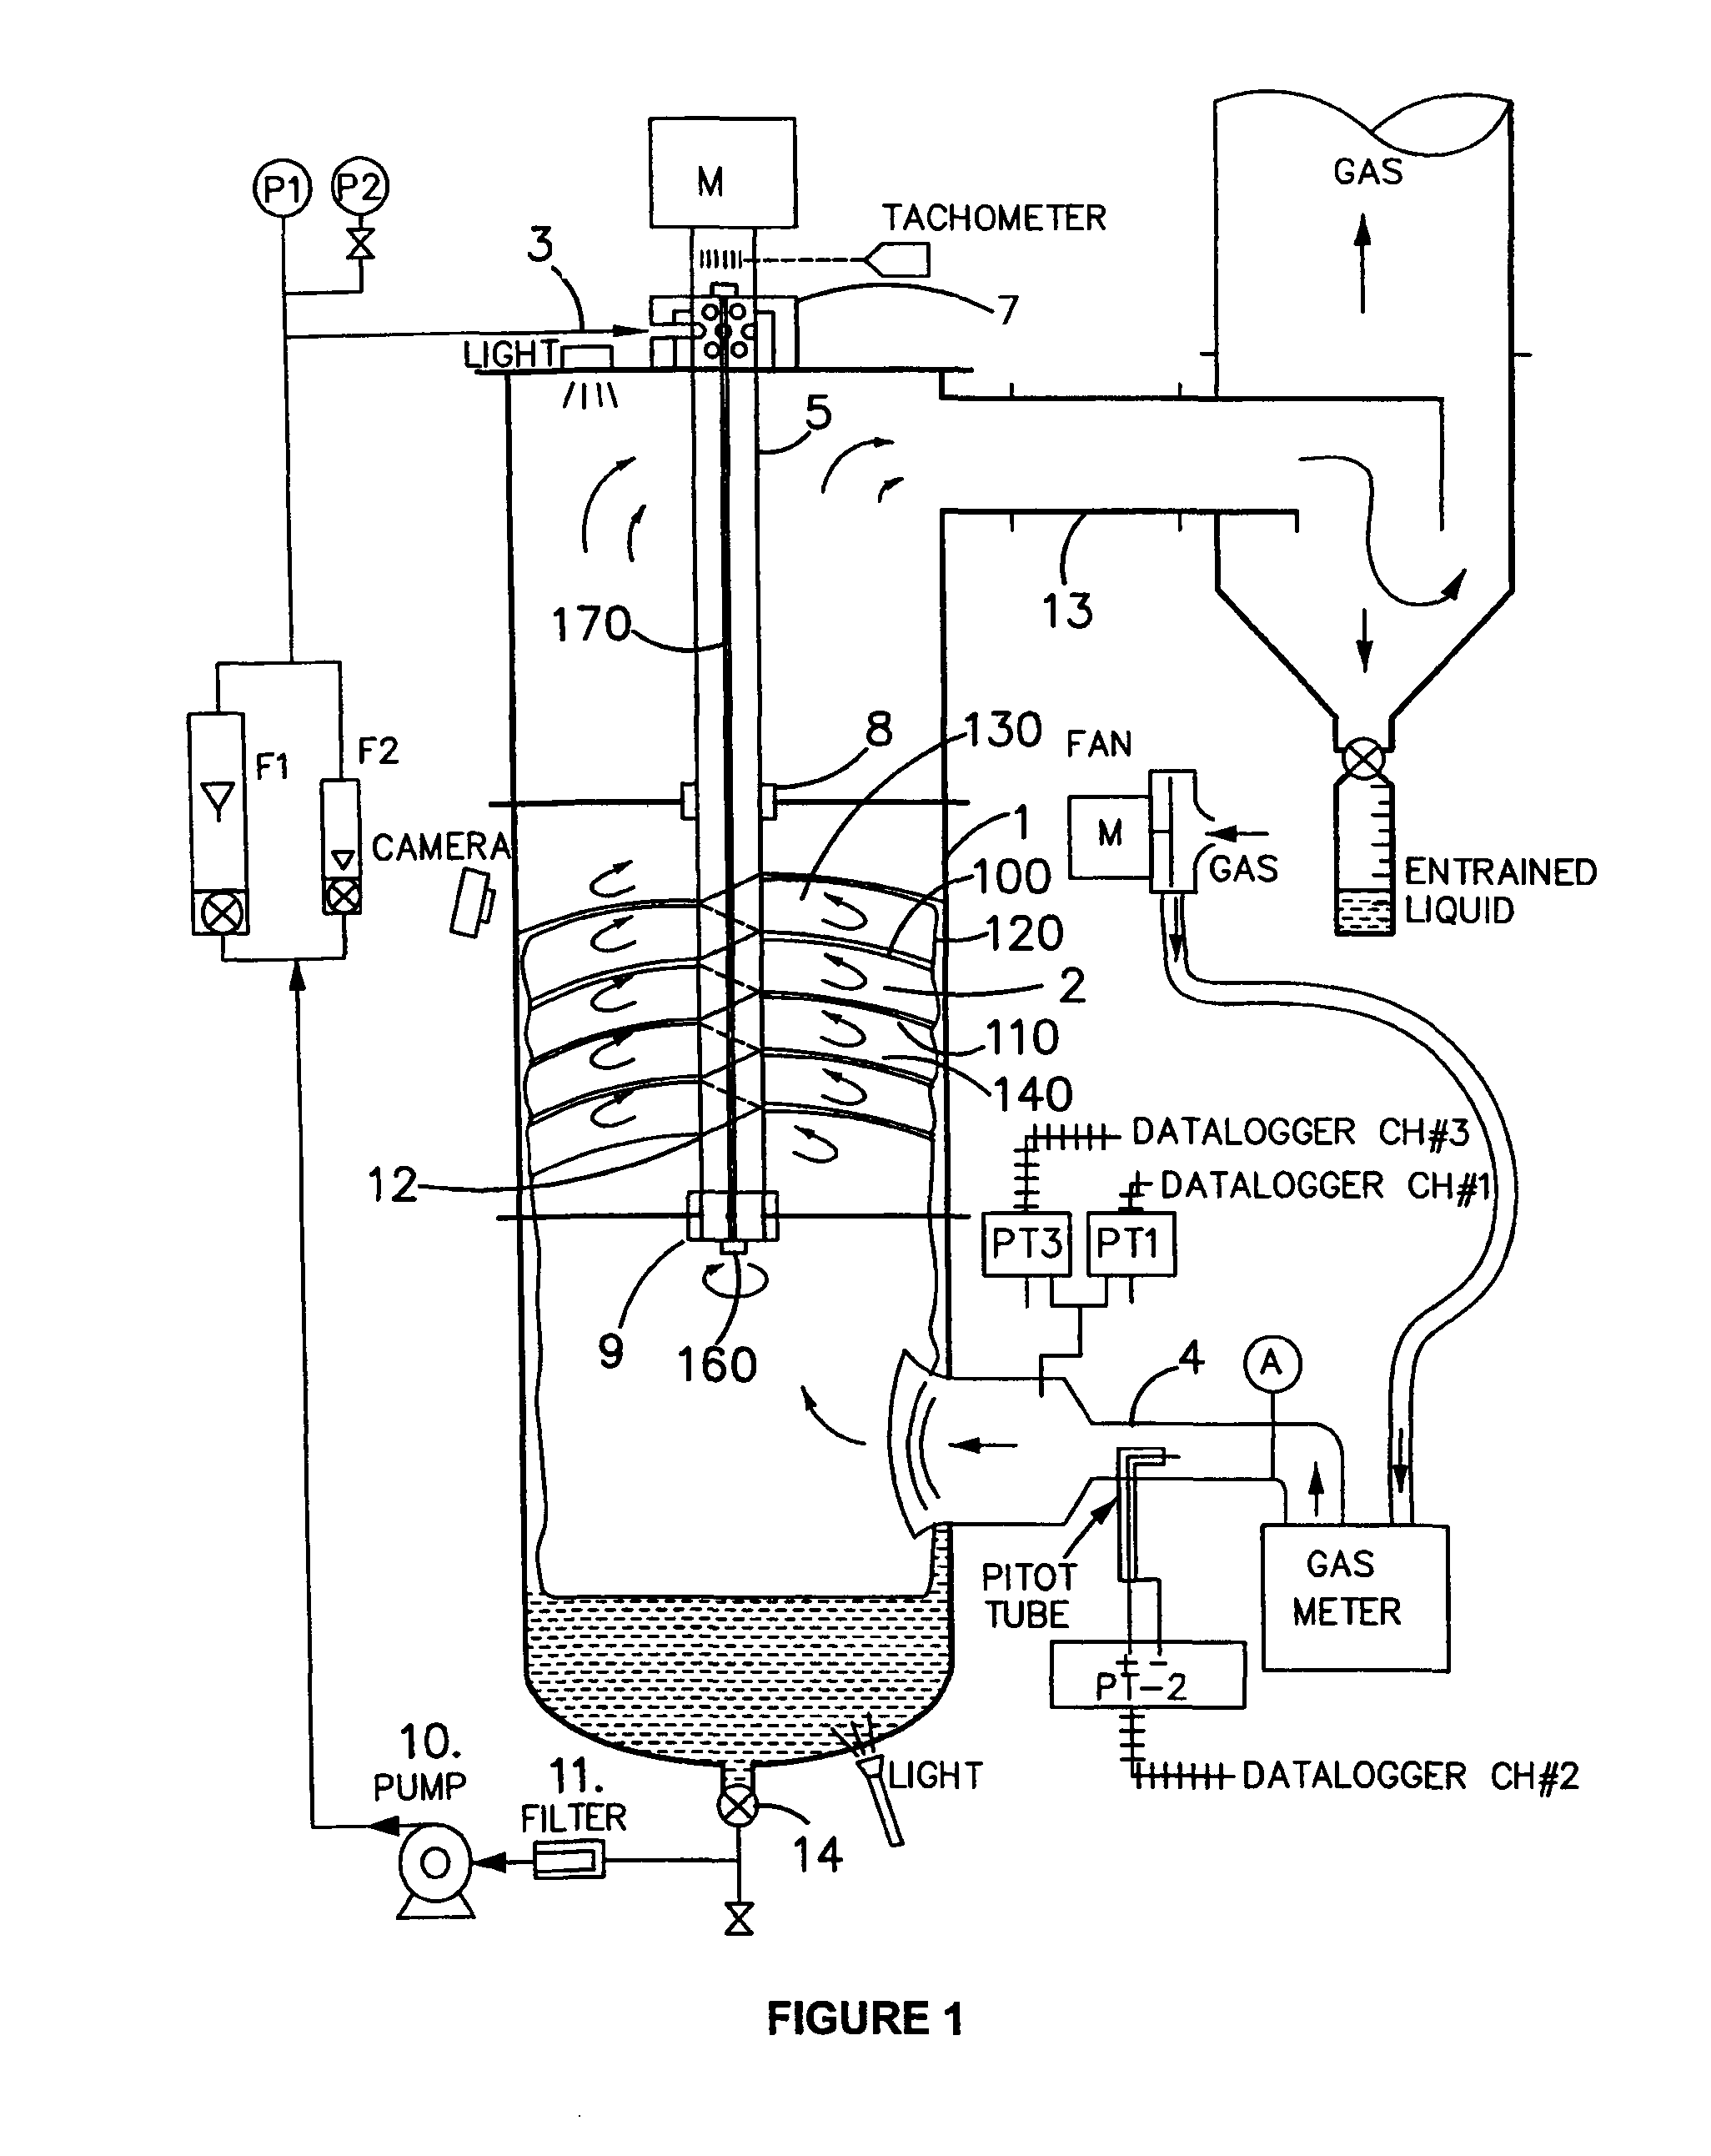 Gas liquid contactor